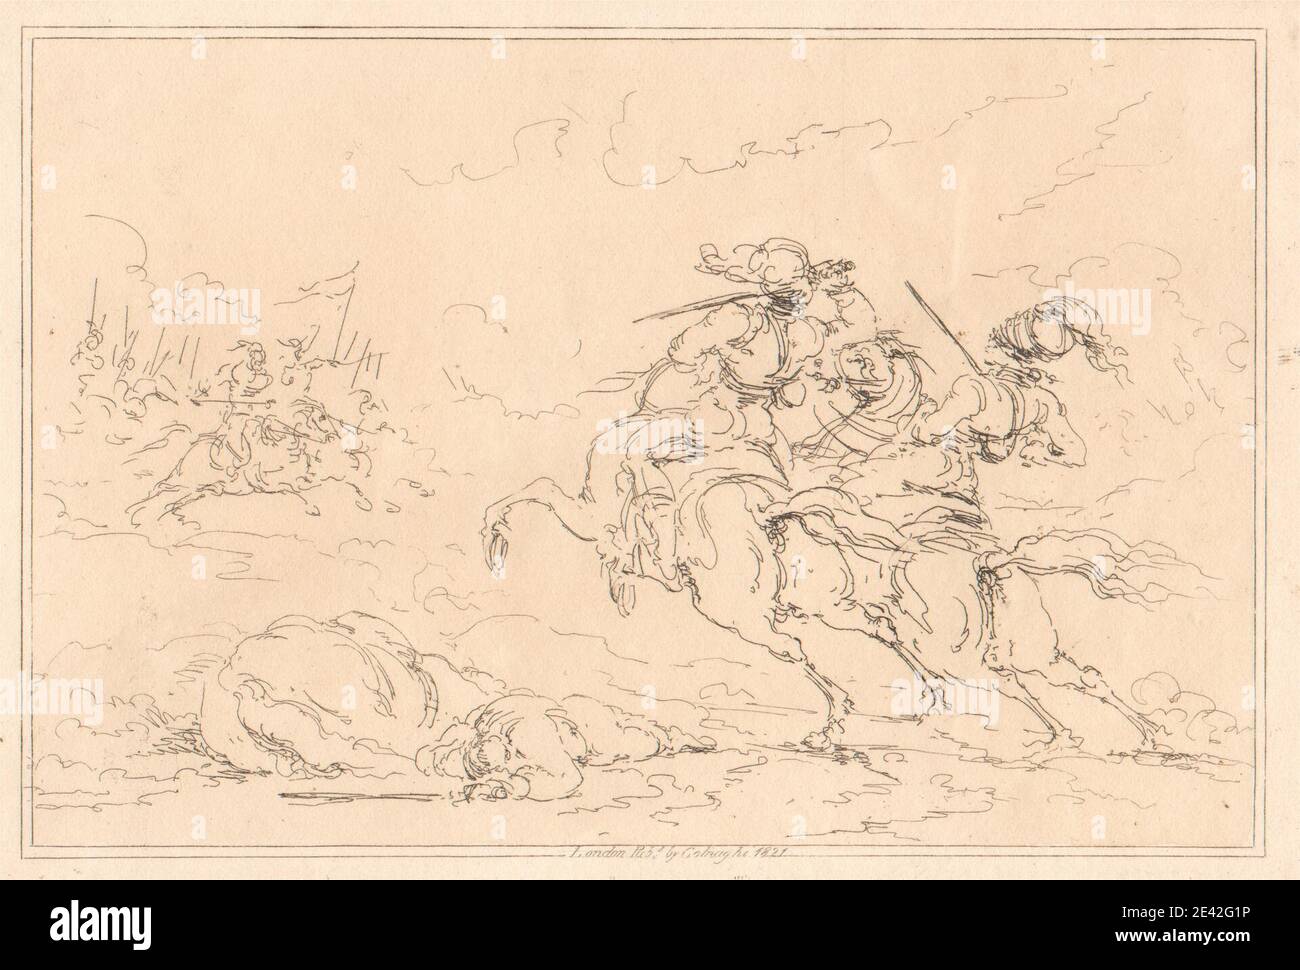 Joseph Steuart, attivo 1821, Cavalrymen, ecc, 1821. Incisione. Foto Stock